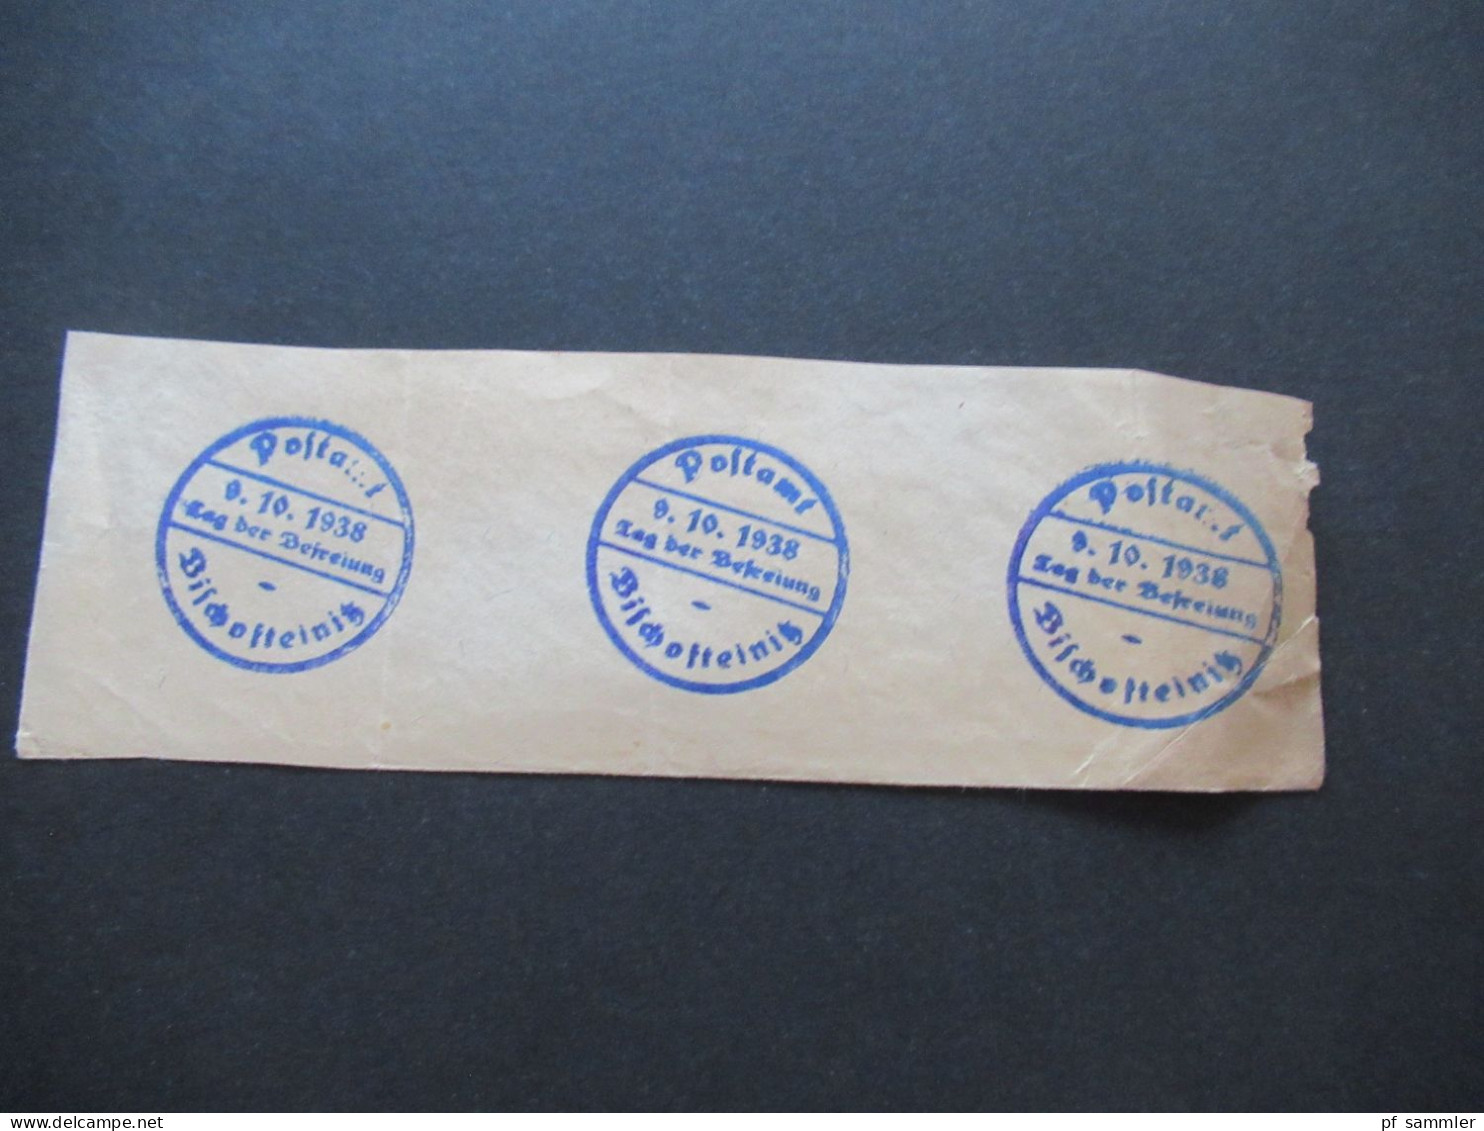 3.Reich Sudetenland Briefstück Mit Befreiungsstempel Postamt Bischofteinitz Sudetenland Tag Der Befreiung 9.10.1938 - Région Des Sudètes